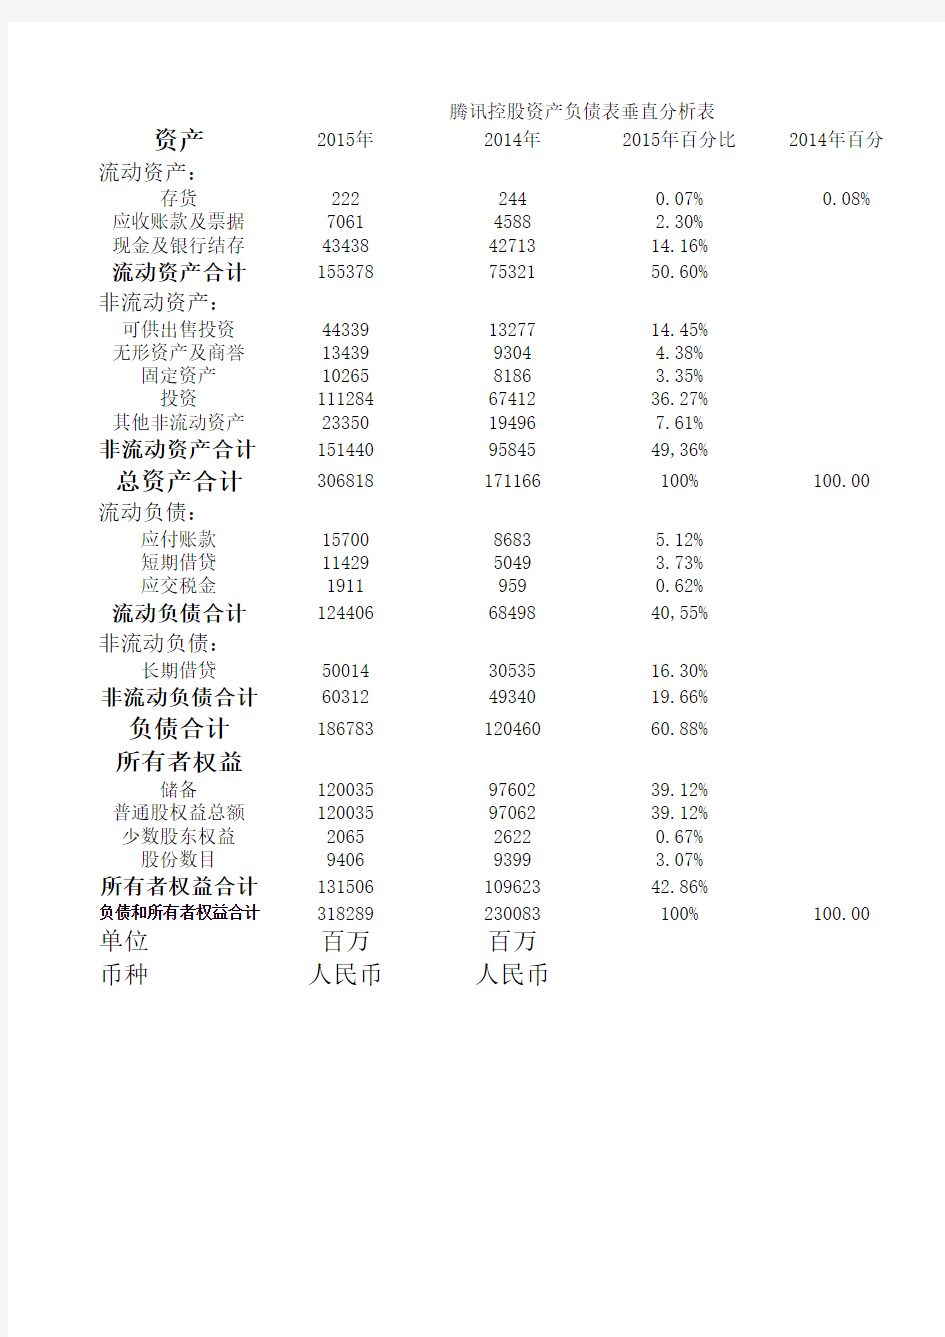 腾讯控股资产负债表垂直分析